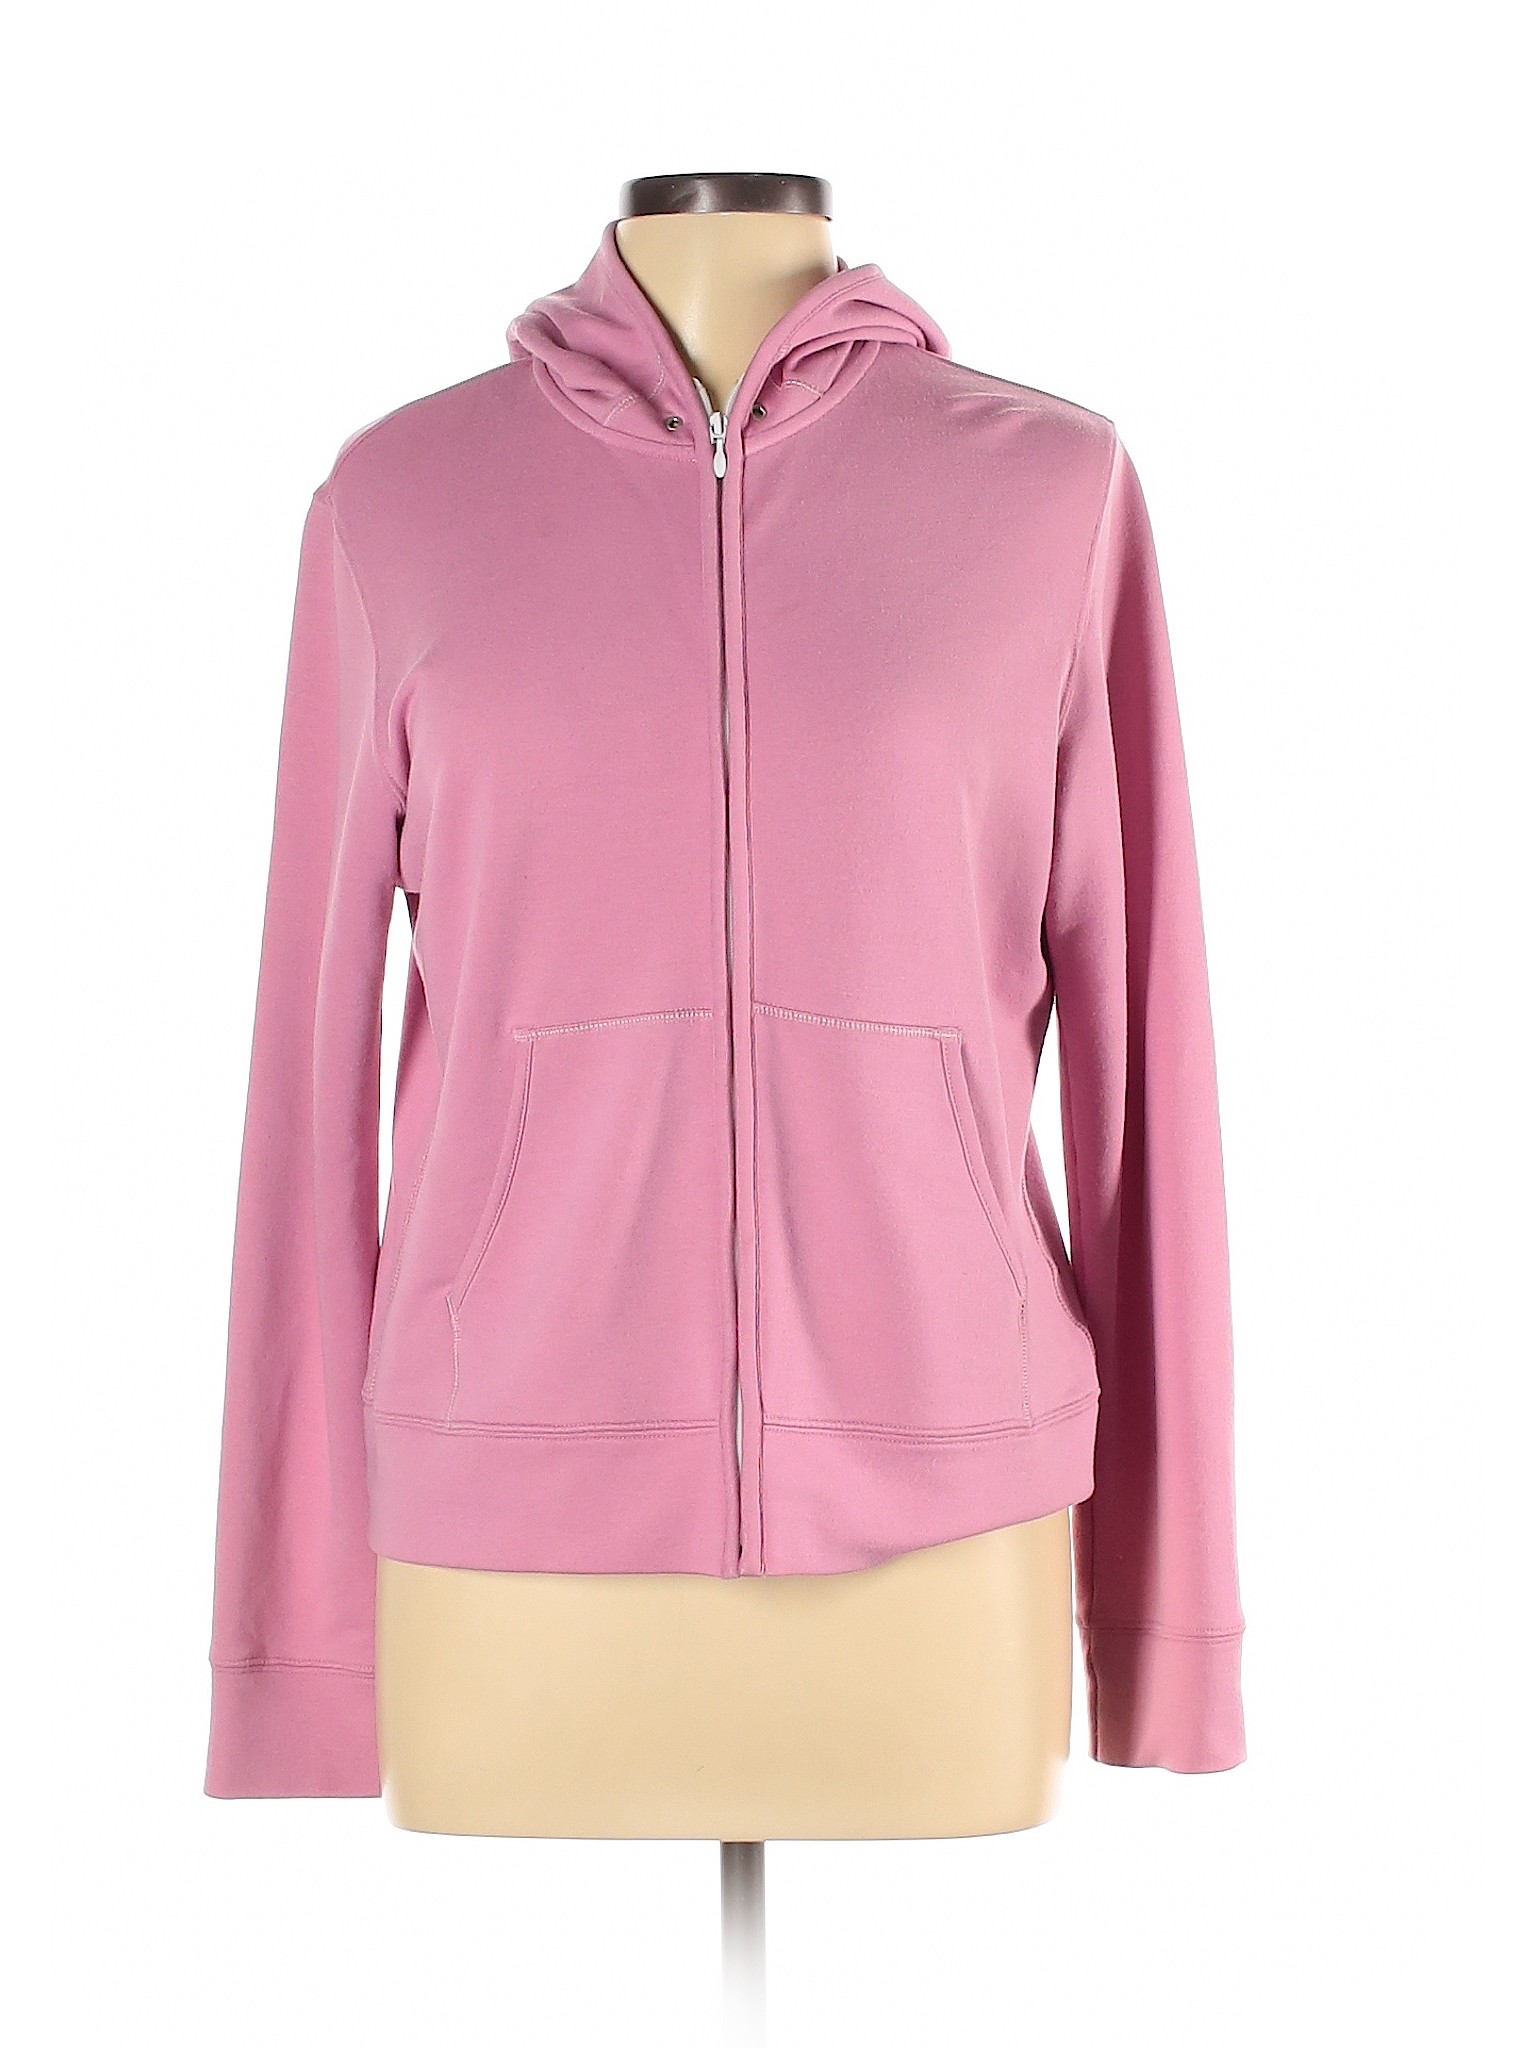 Unbranded Women Pink Zip Up Hoodie L | eBay